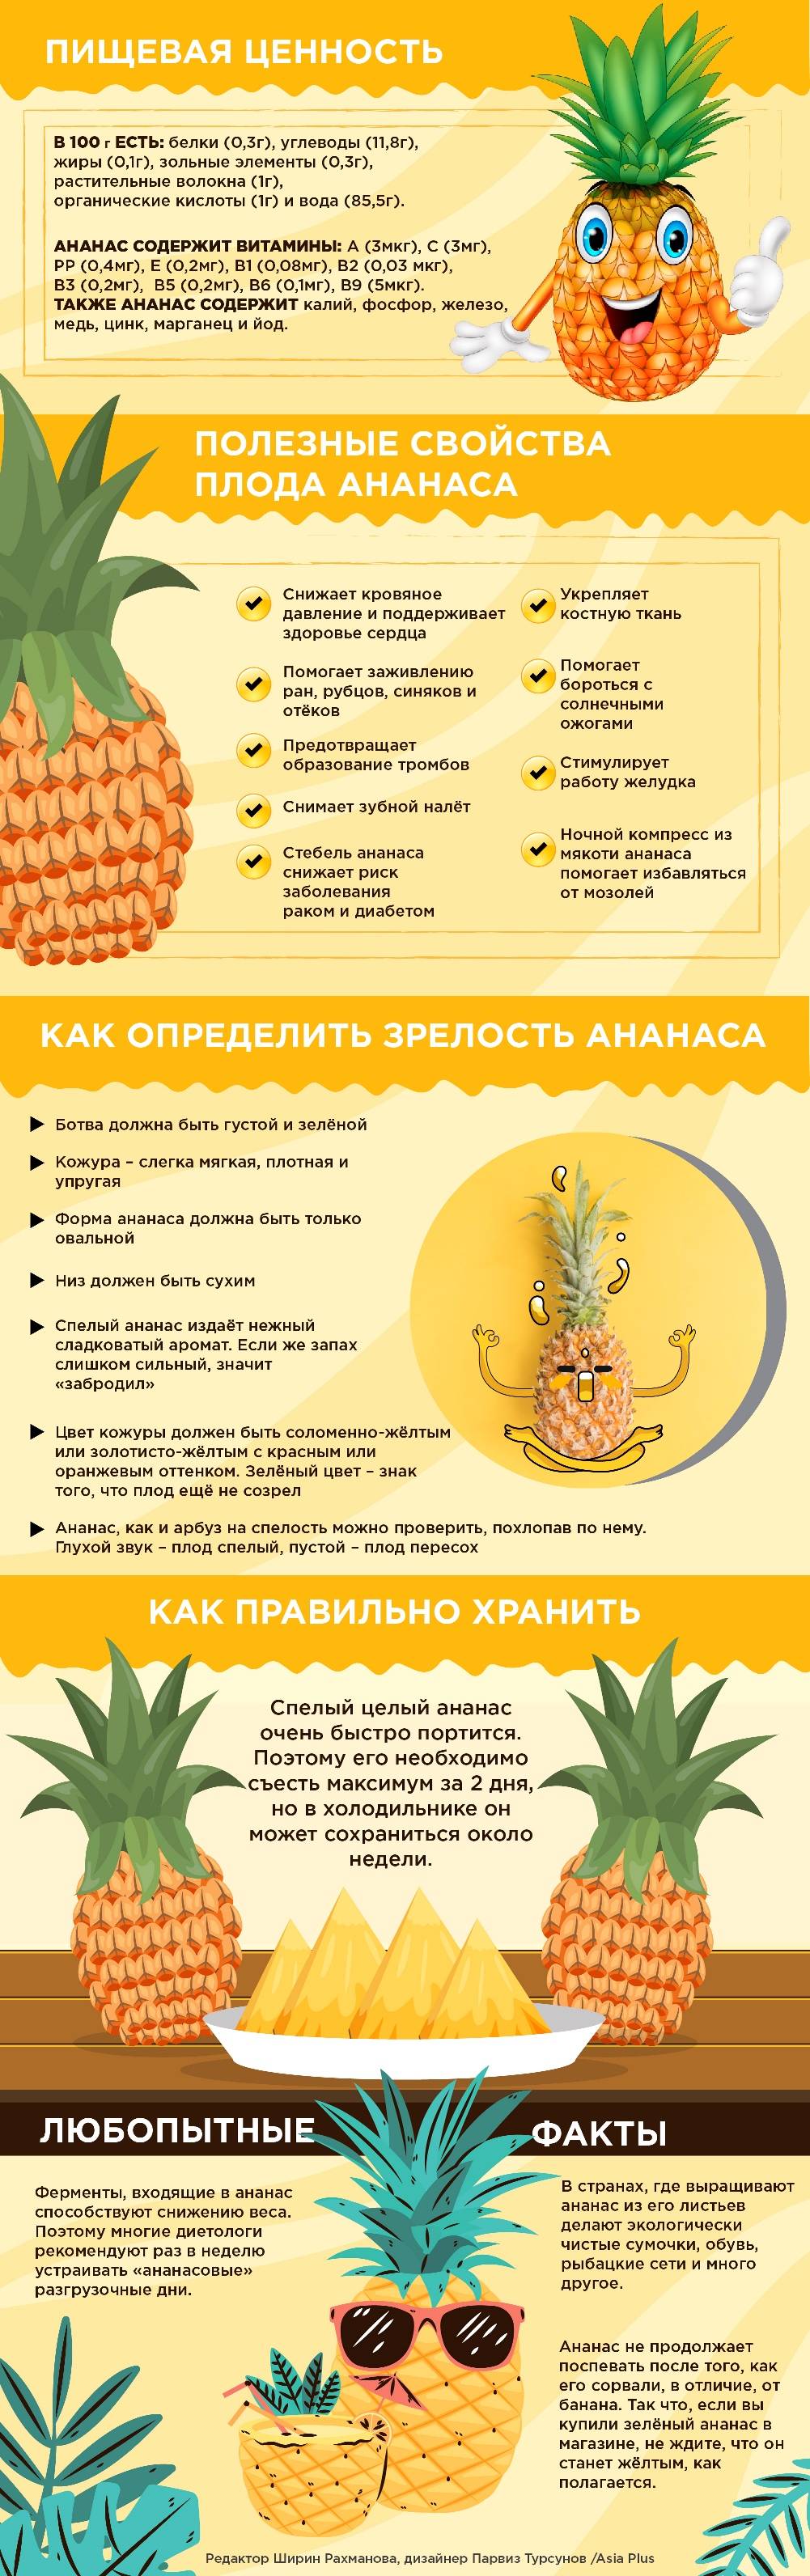 Как выбрать спелый ананас: 5 простых советов